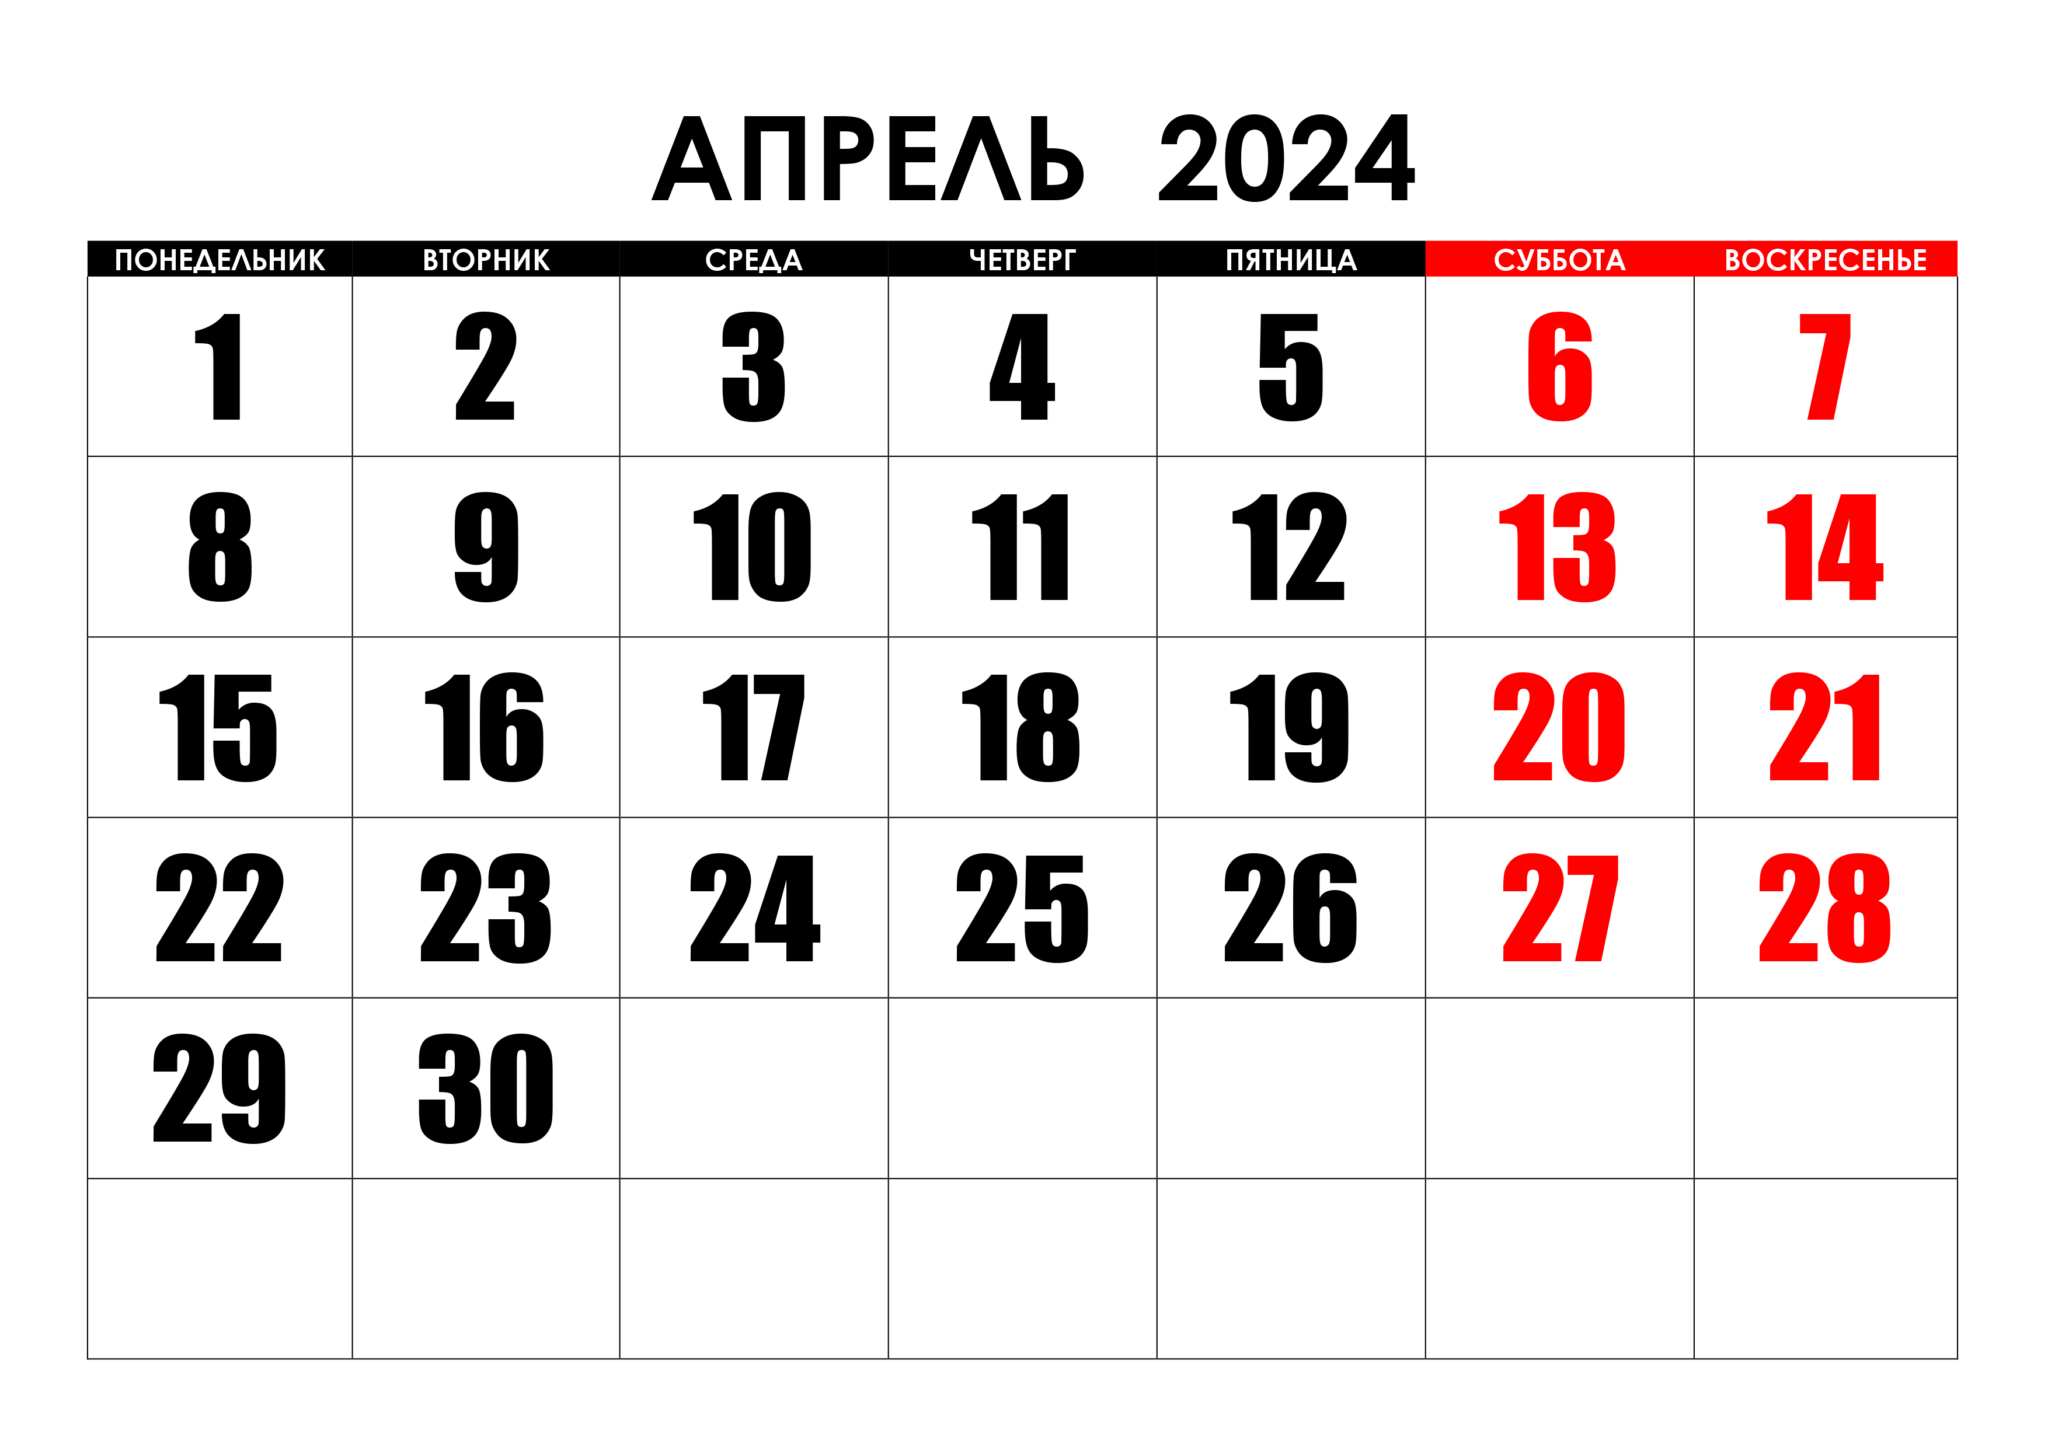 Сколько осталось до 2 апреля 2024 дней. Календарь август 2022. Календарь на май 2022 года. Календарь на август 2022г. Календарь на пвгуст 2022года.